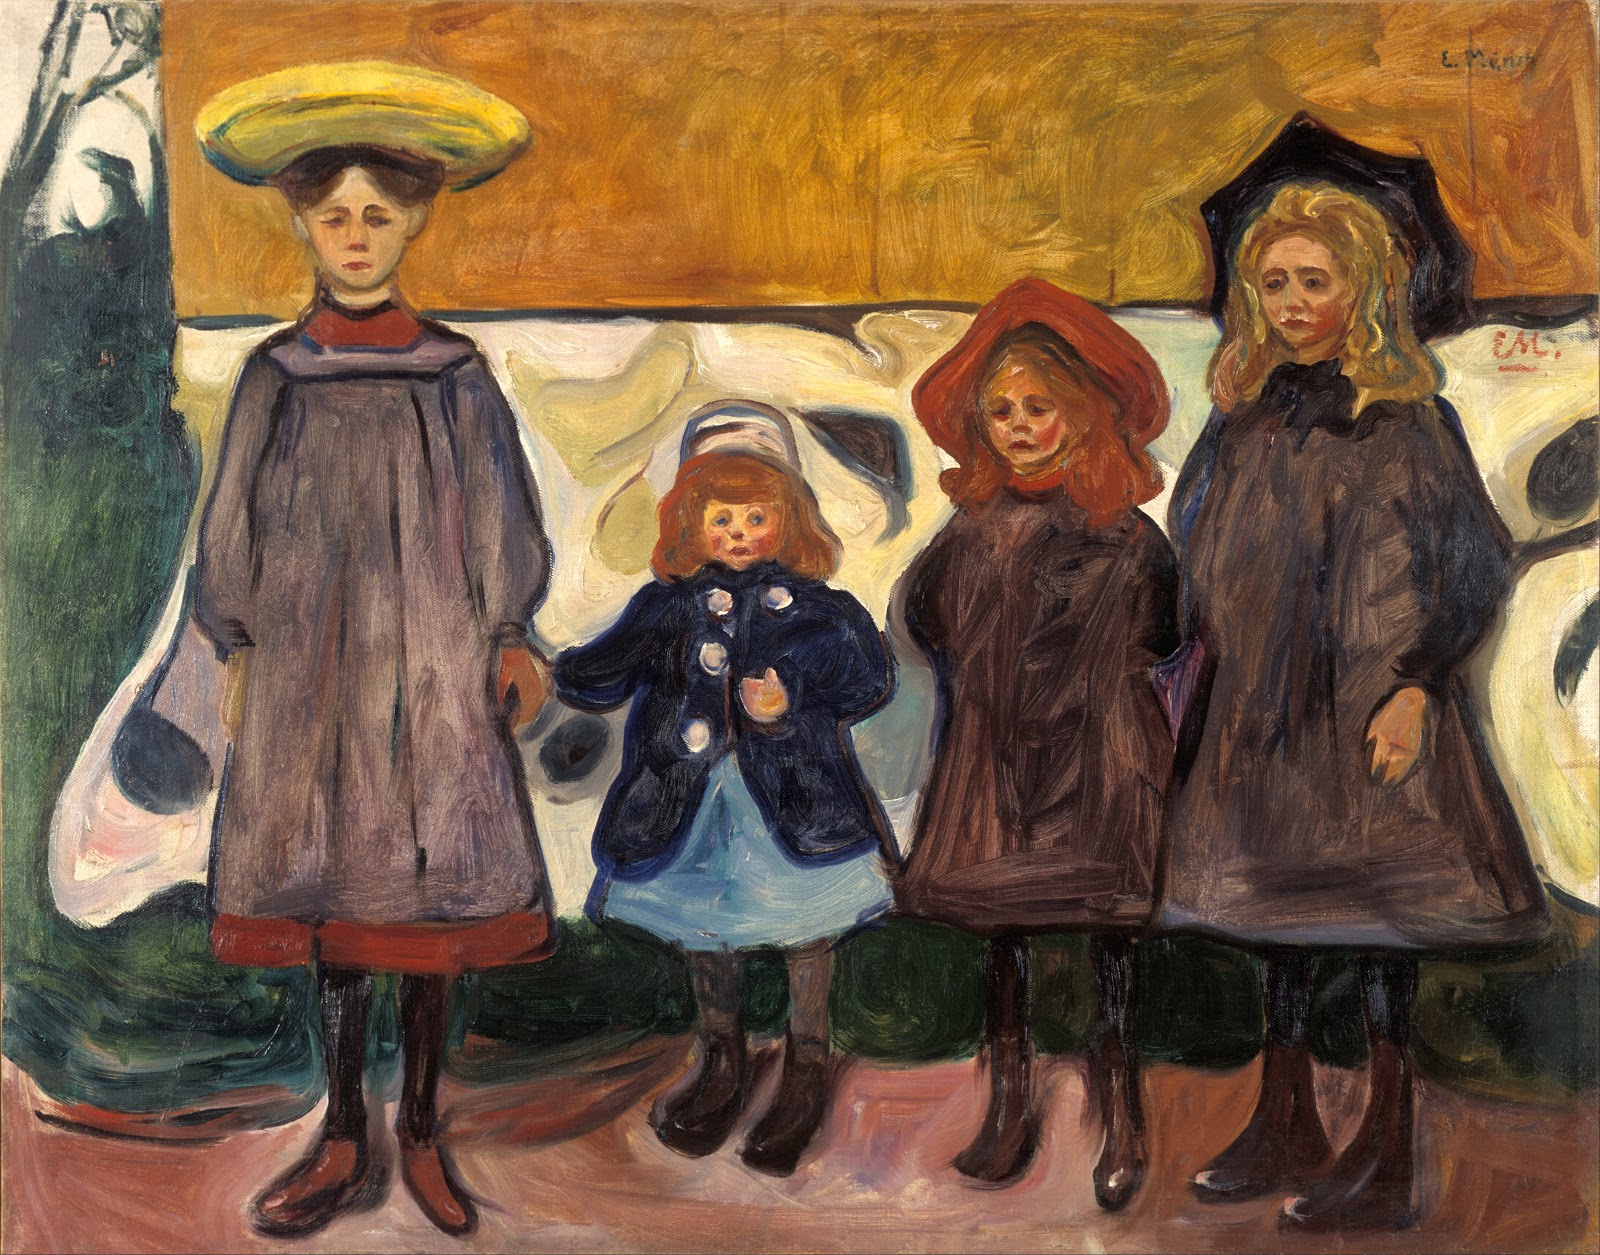 Edvard+Munch-1863-1944 (20).jpg